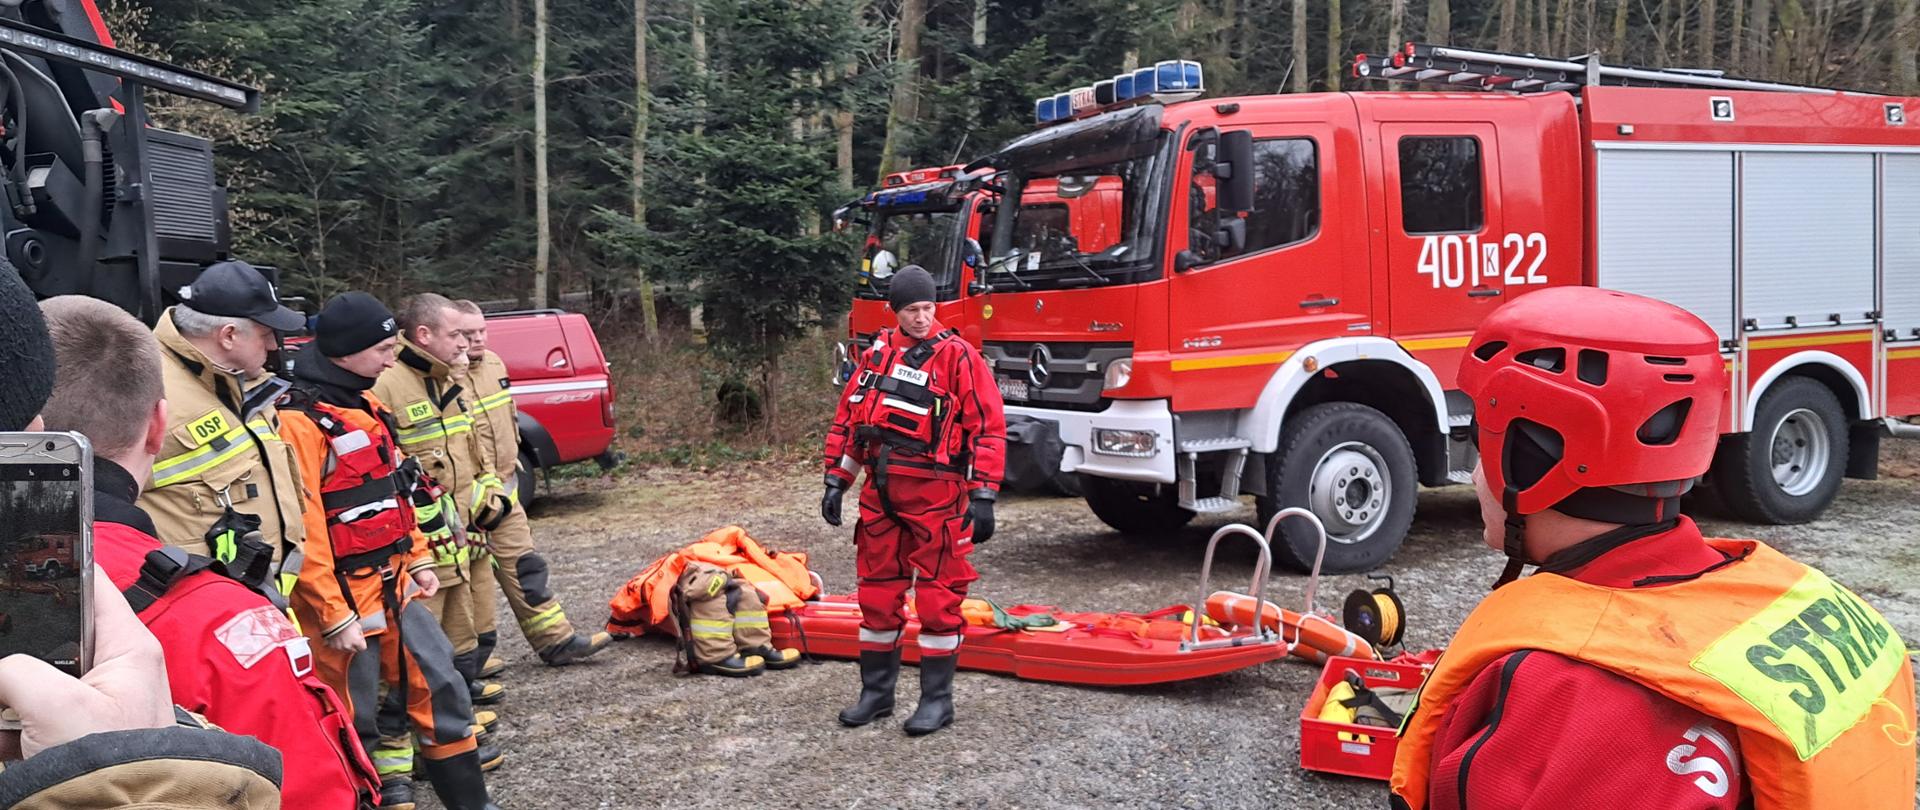 Zdjęcie przedstawia przeprowadzany instruktarz podczas ćwiczeń z zakresu ratownictwa lodowego. Na zdjęciu widać strażaka ubranego w czerwony strój do pracy w wodzie, dodatkowo ma ubraną czerwoną kamizelkę i czapkę na głowie. Po prawej stronie widać odwróconego tyłem strażaka ubranego w czerwone ubranie do pracy w wodzie, na głowie ma kask i dodatkowo ubraną pomarańczową kamizelkę ratunkową z napisem STRAŻ. Na ziemi rozłożony jest sprzęt do ratownictwa wodno-lodowego oraz sanie lodowe. Po lewej stronie widać strażaków ubranych w piaskowe mundury. Za strażakami widać czerwone pojazdy straży pożarnej. 